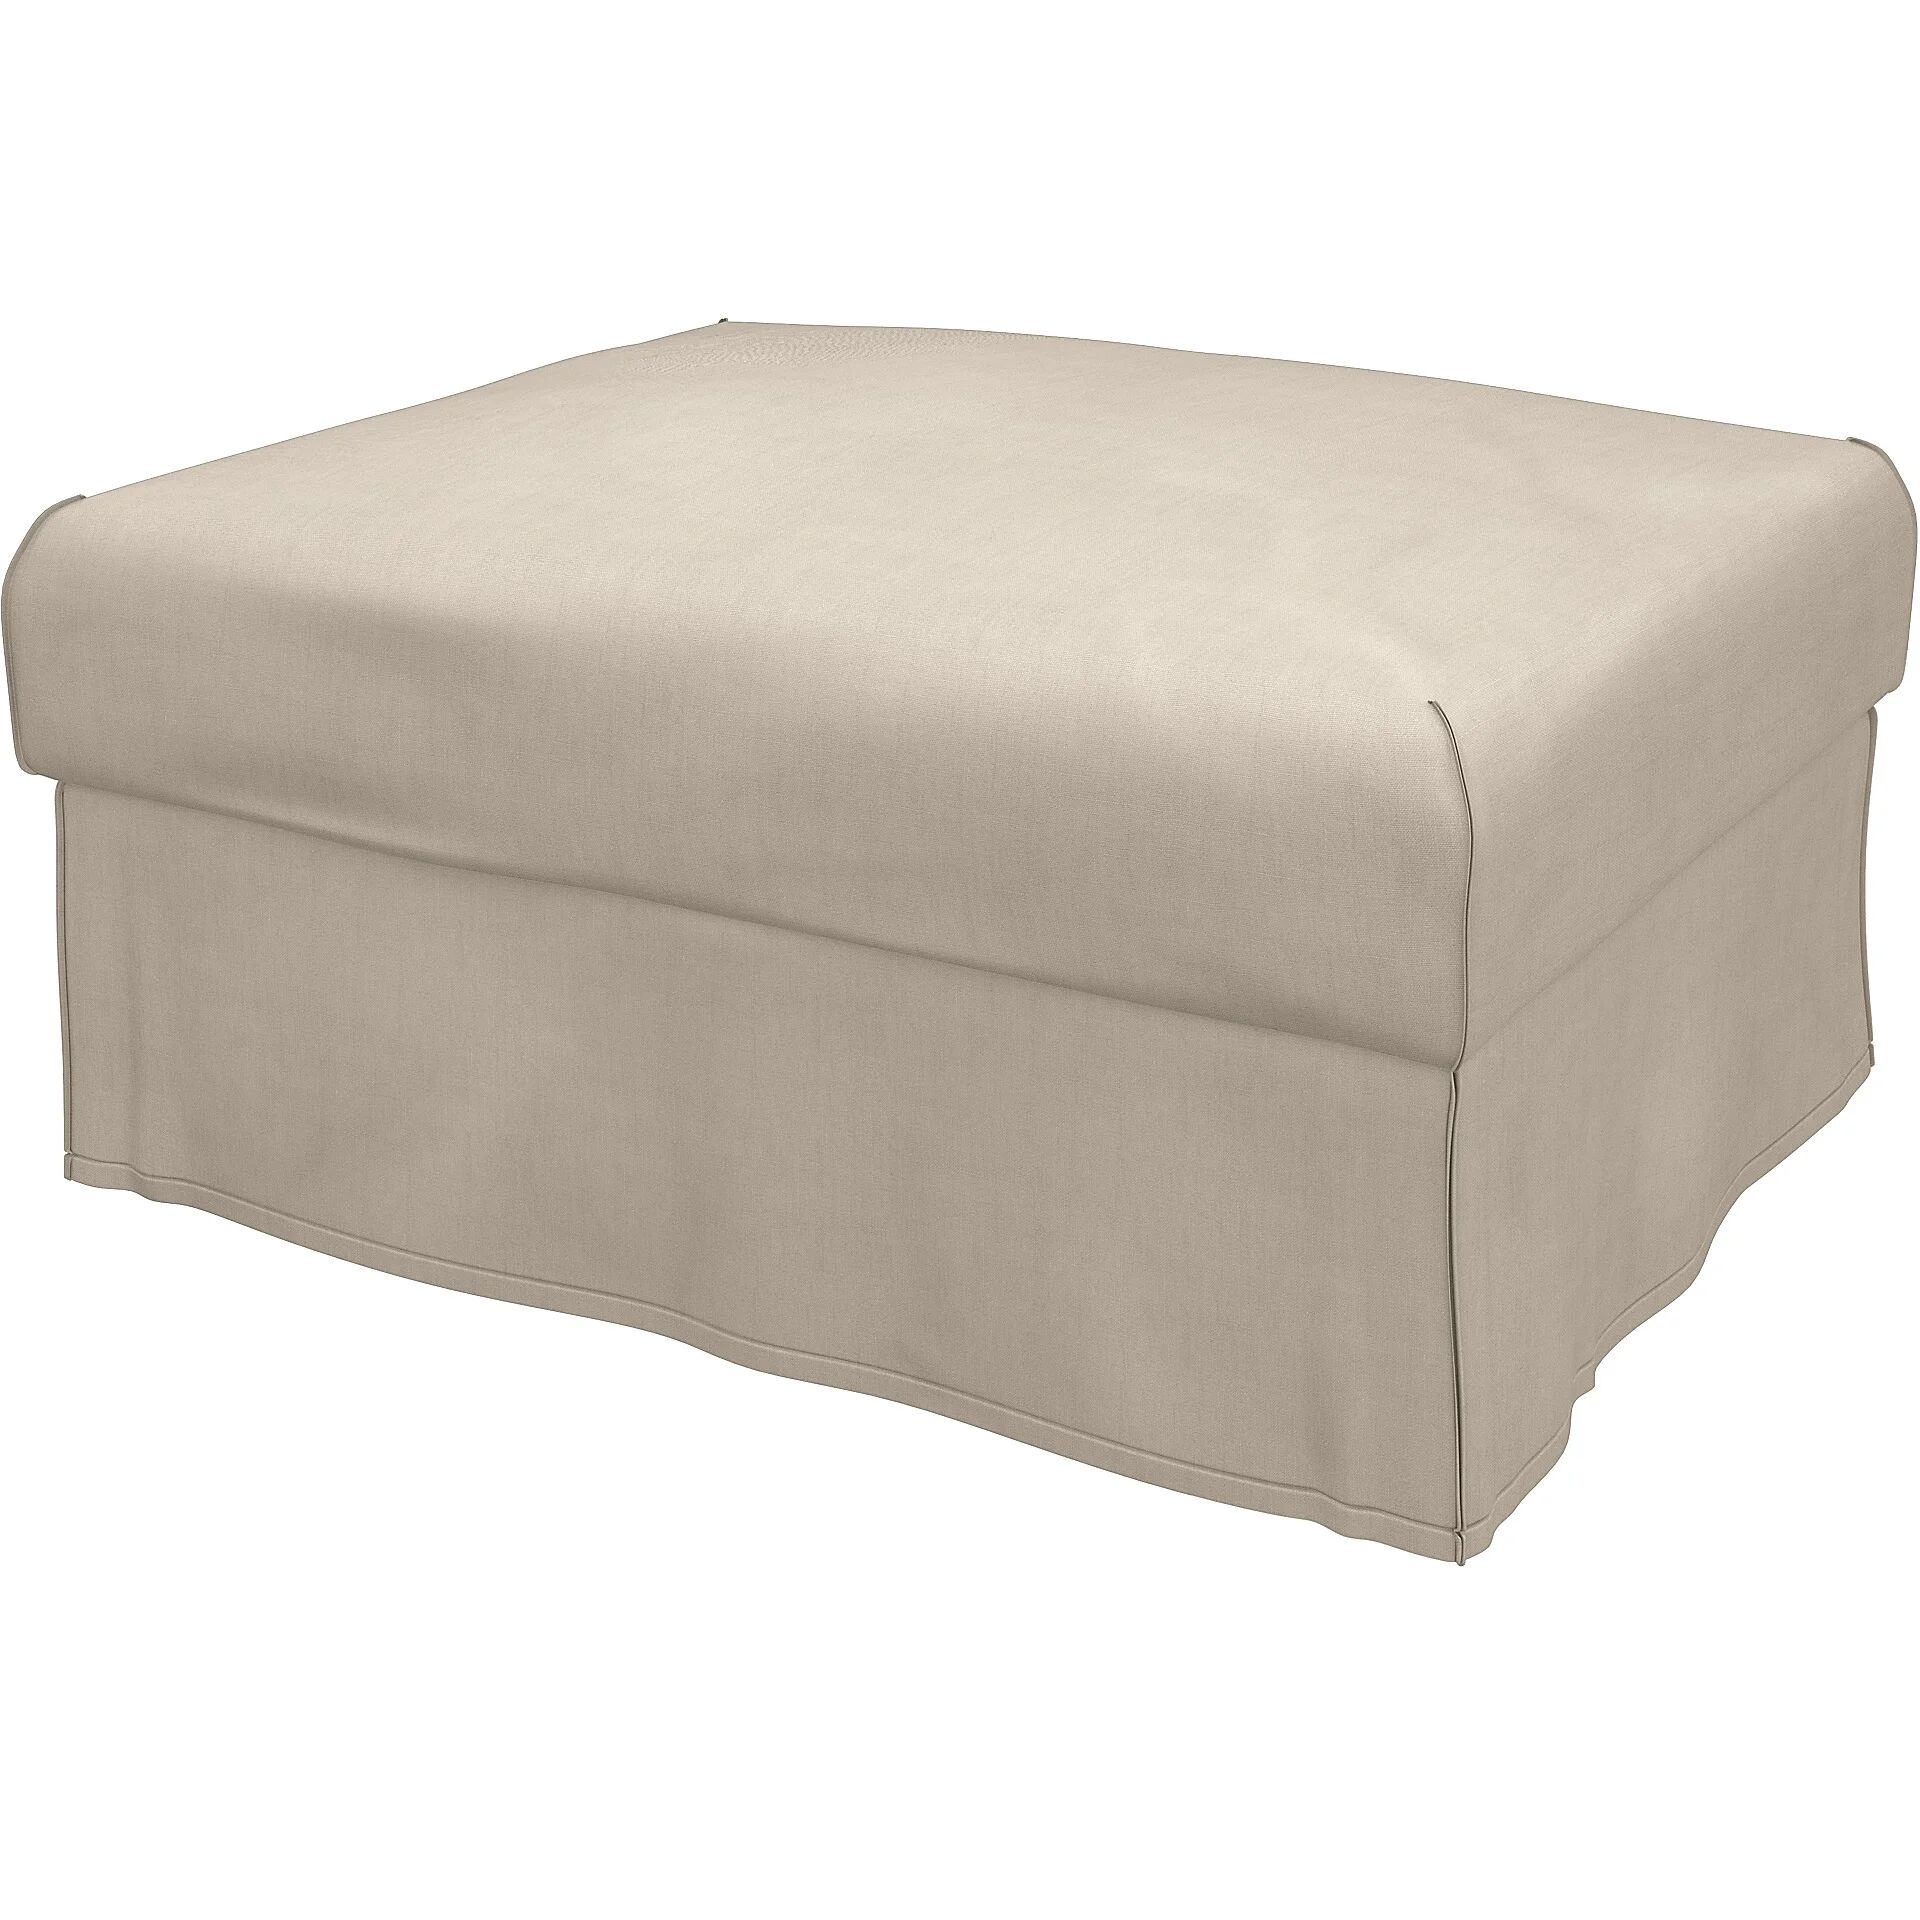 IKEA - Vimle footstool cover, Parchment, Linen - Bemz